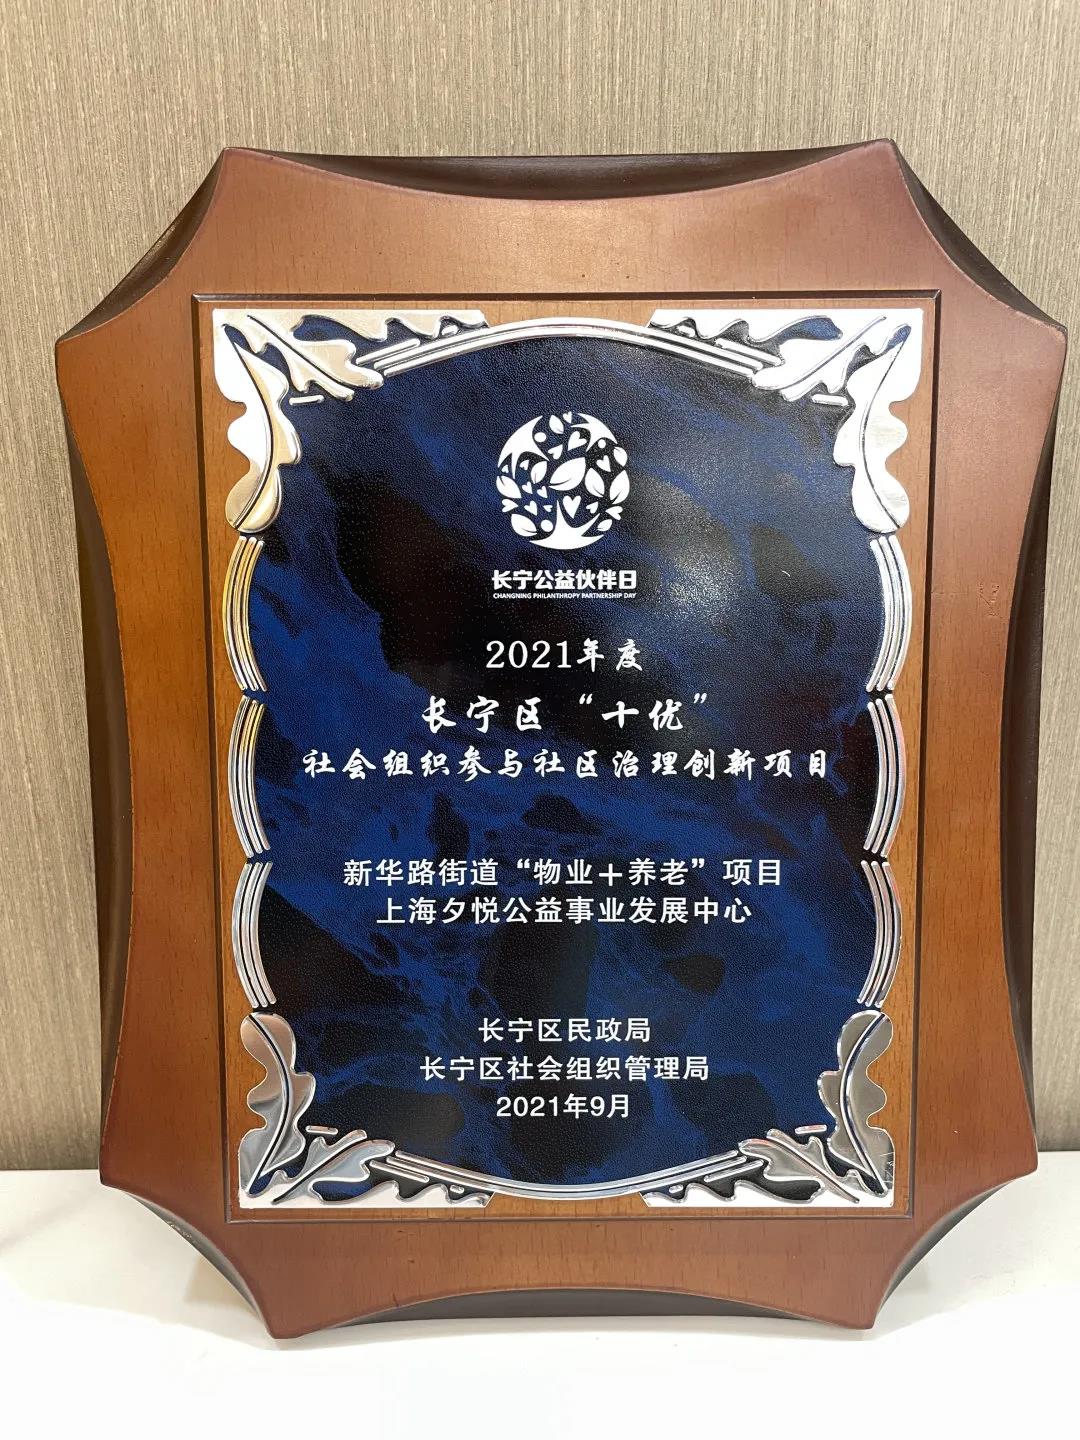 夕悦荣获2021年度长宁区第十二届公益伙伴日三项大奖